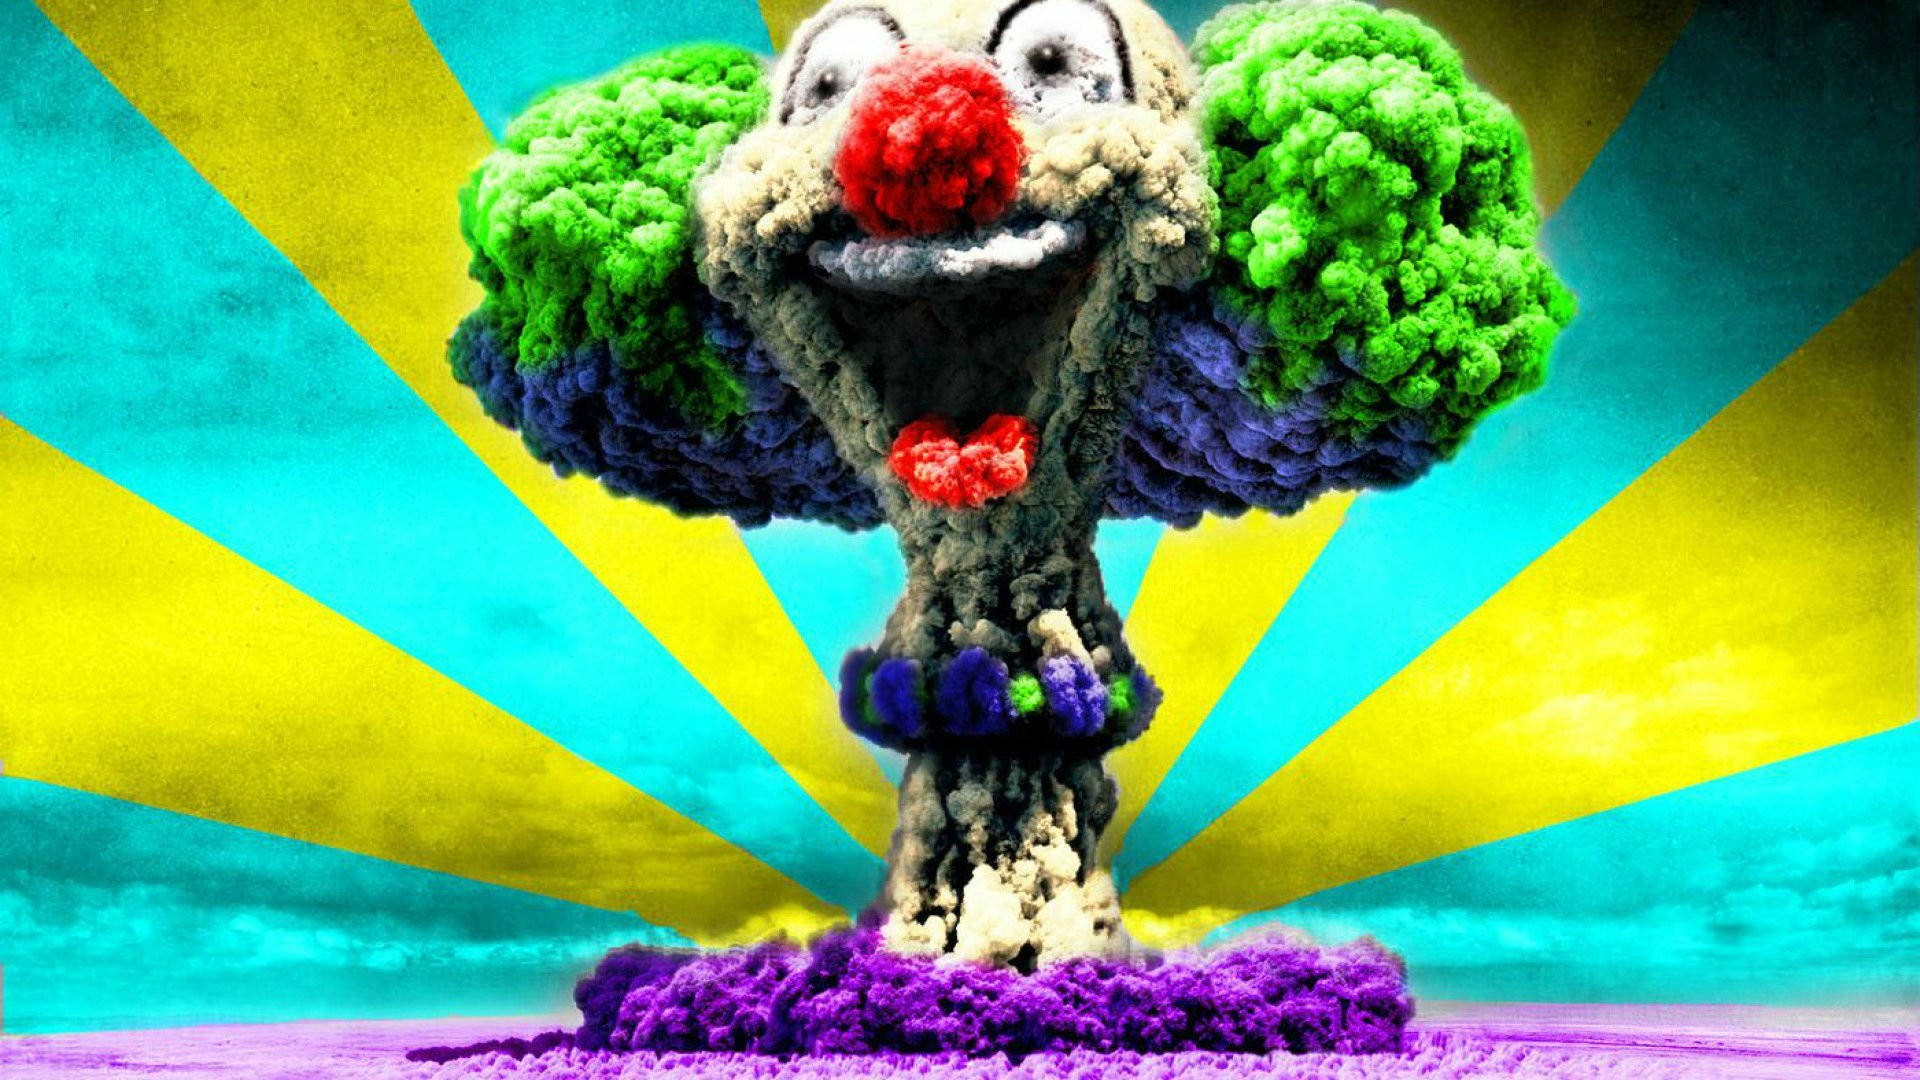 Icp Clown Nuclear Cloud